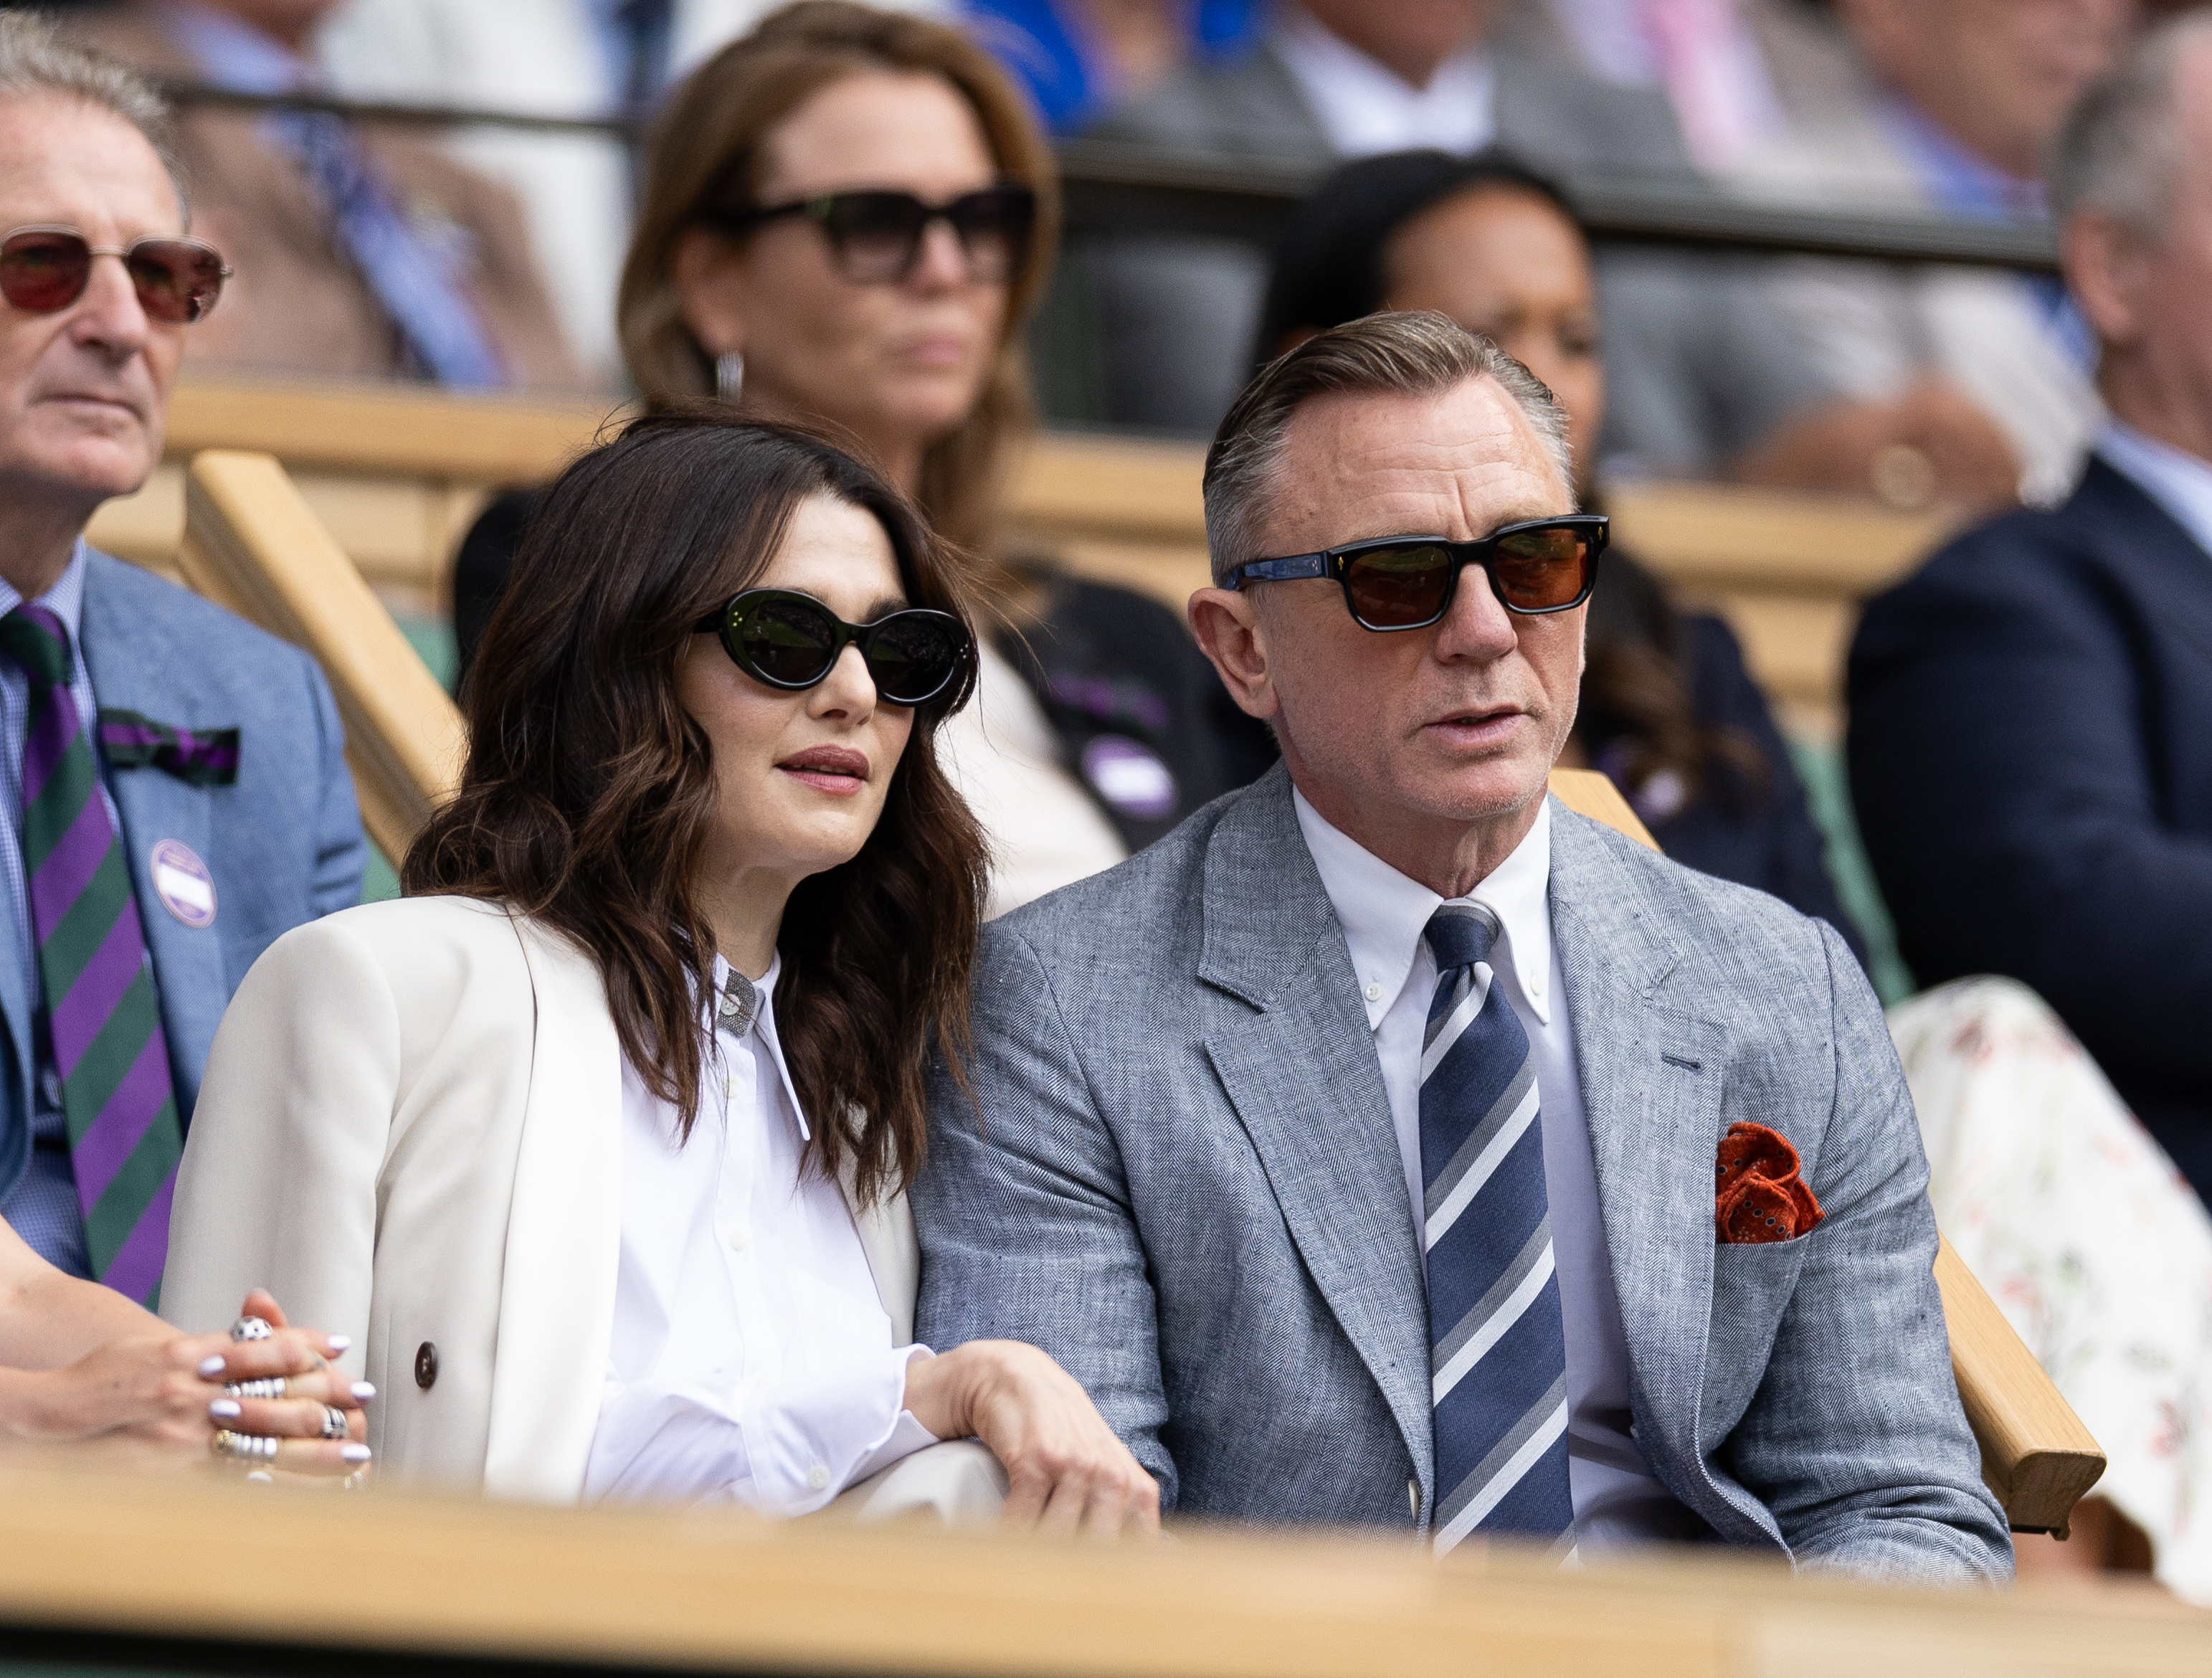 Daniel Craig and Rachel Weisz at a tennis match